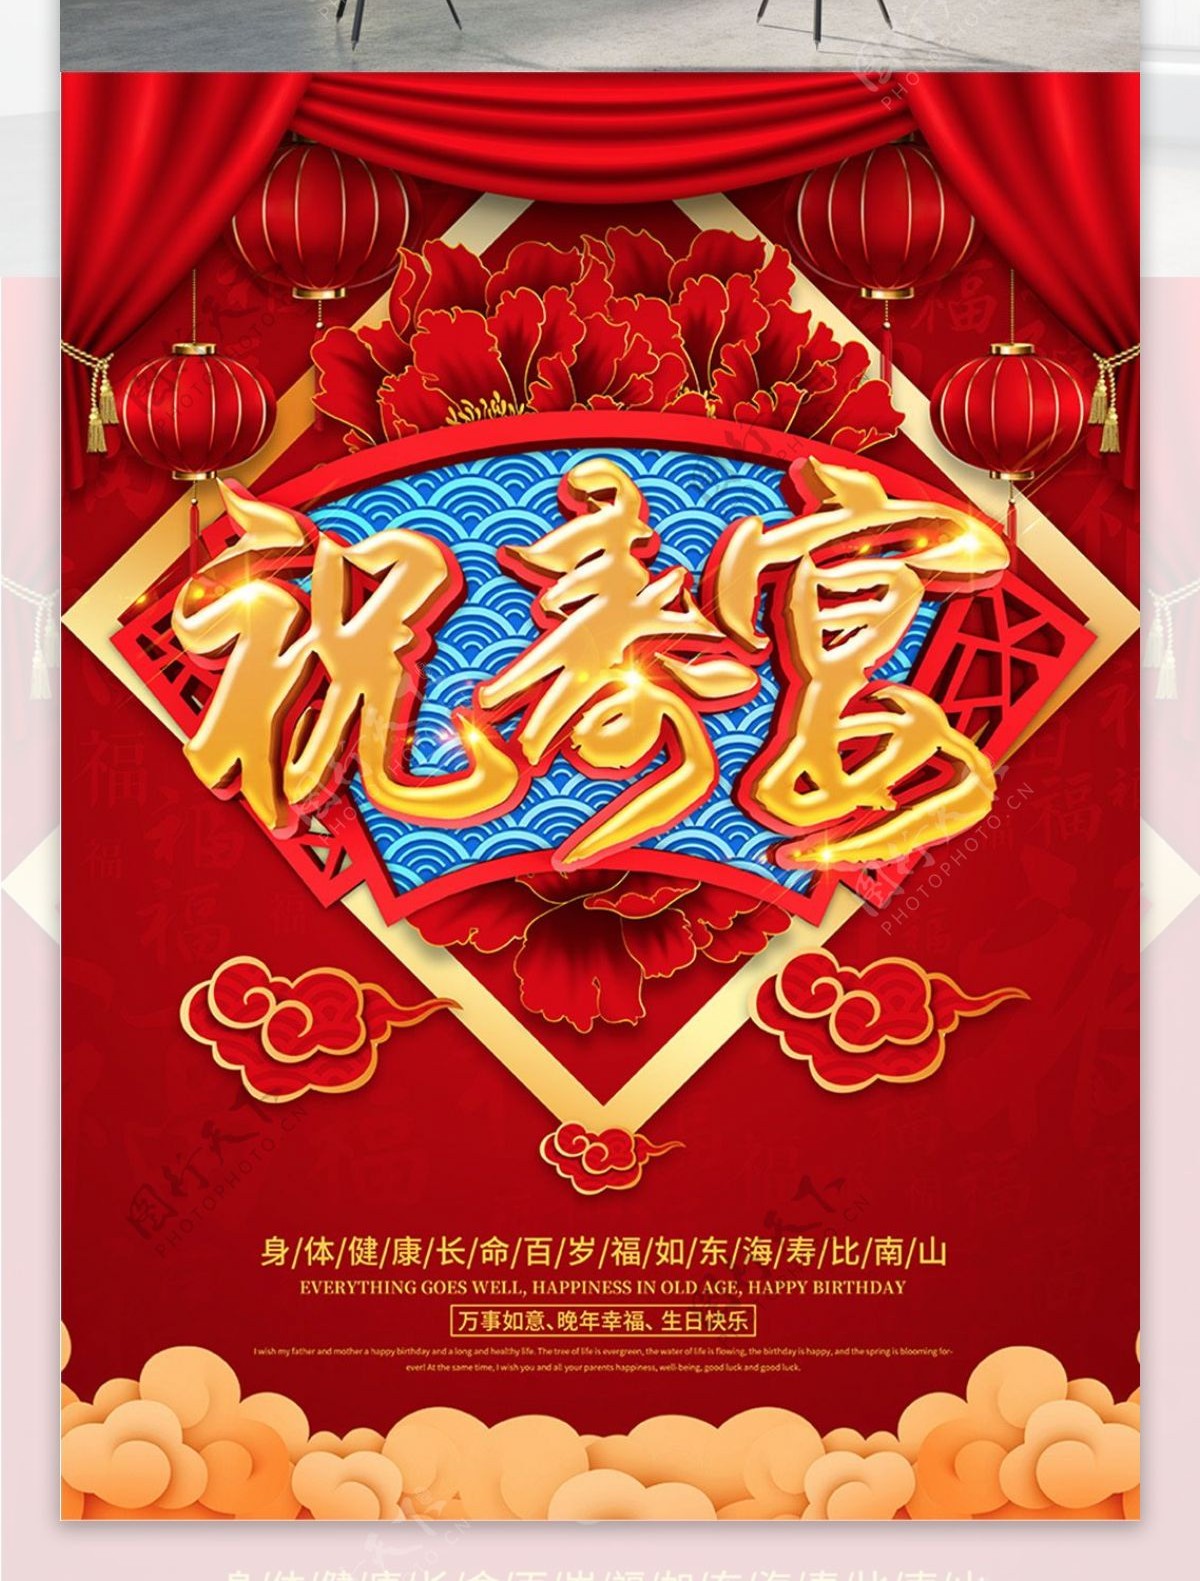 红色喜庆祝寿宴海报设计